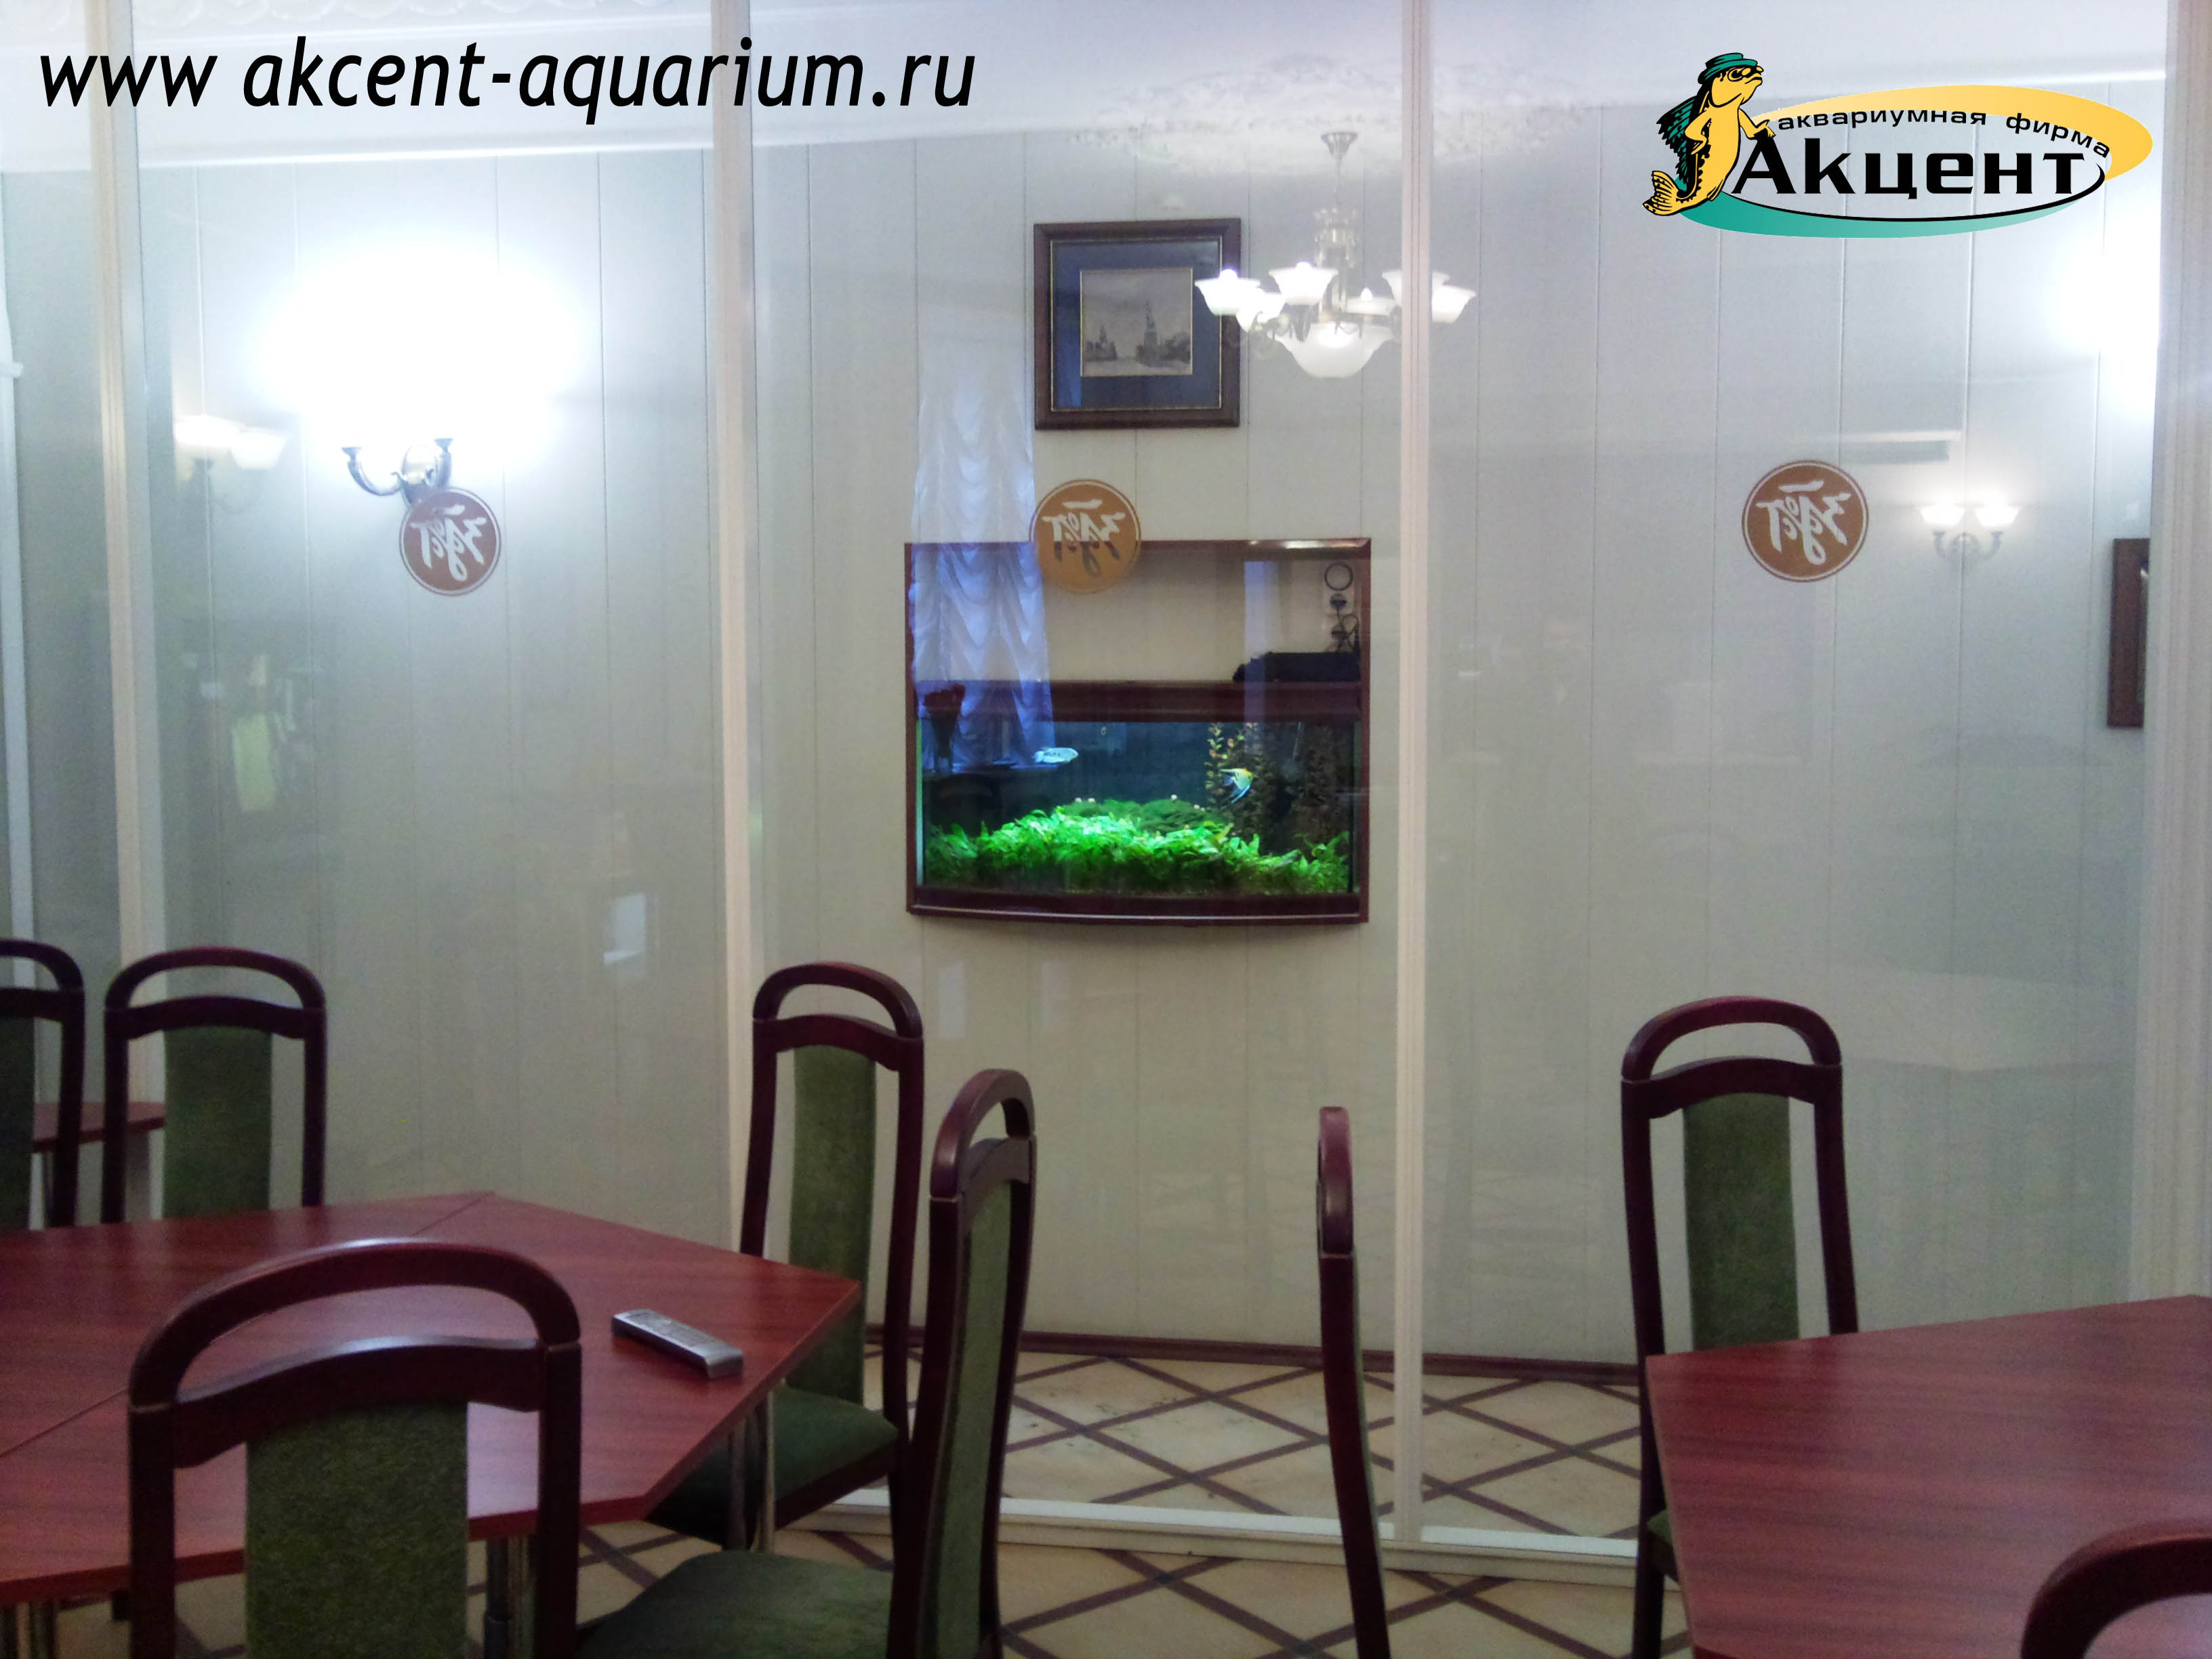 Акцент-аквариум, аквариум с 130 литров, гостиница